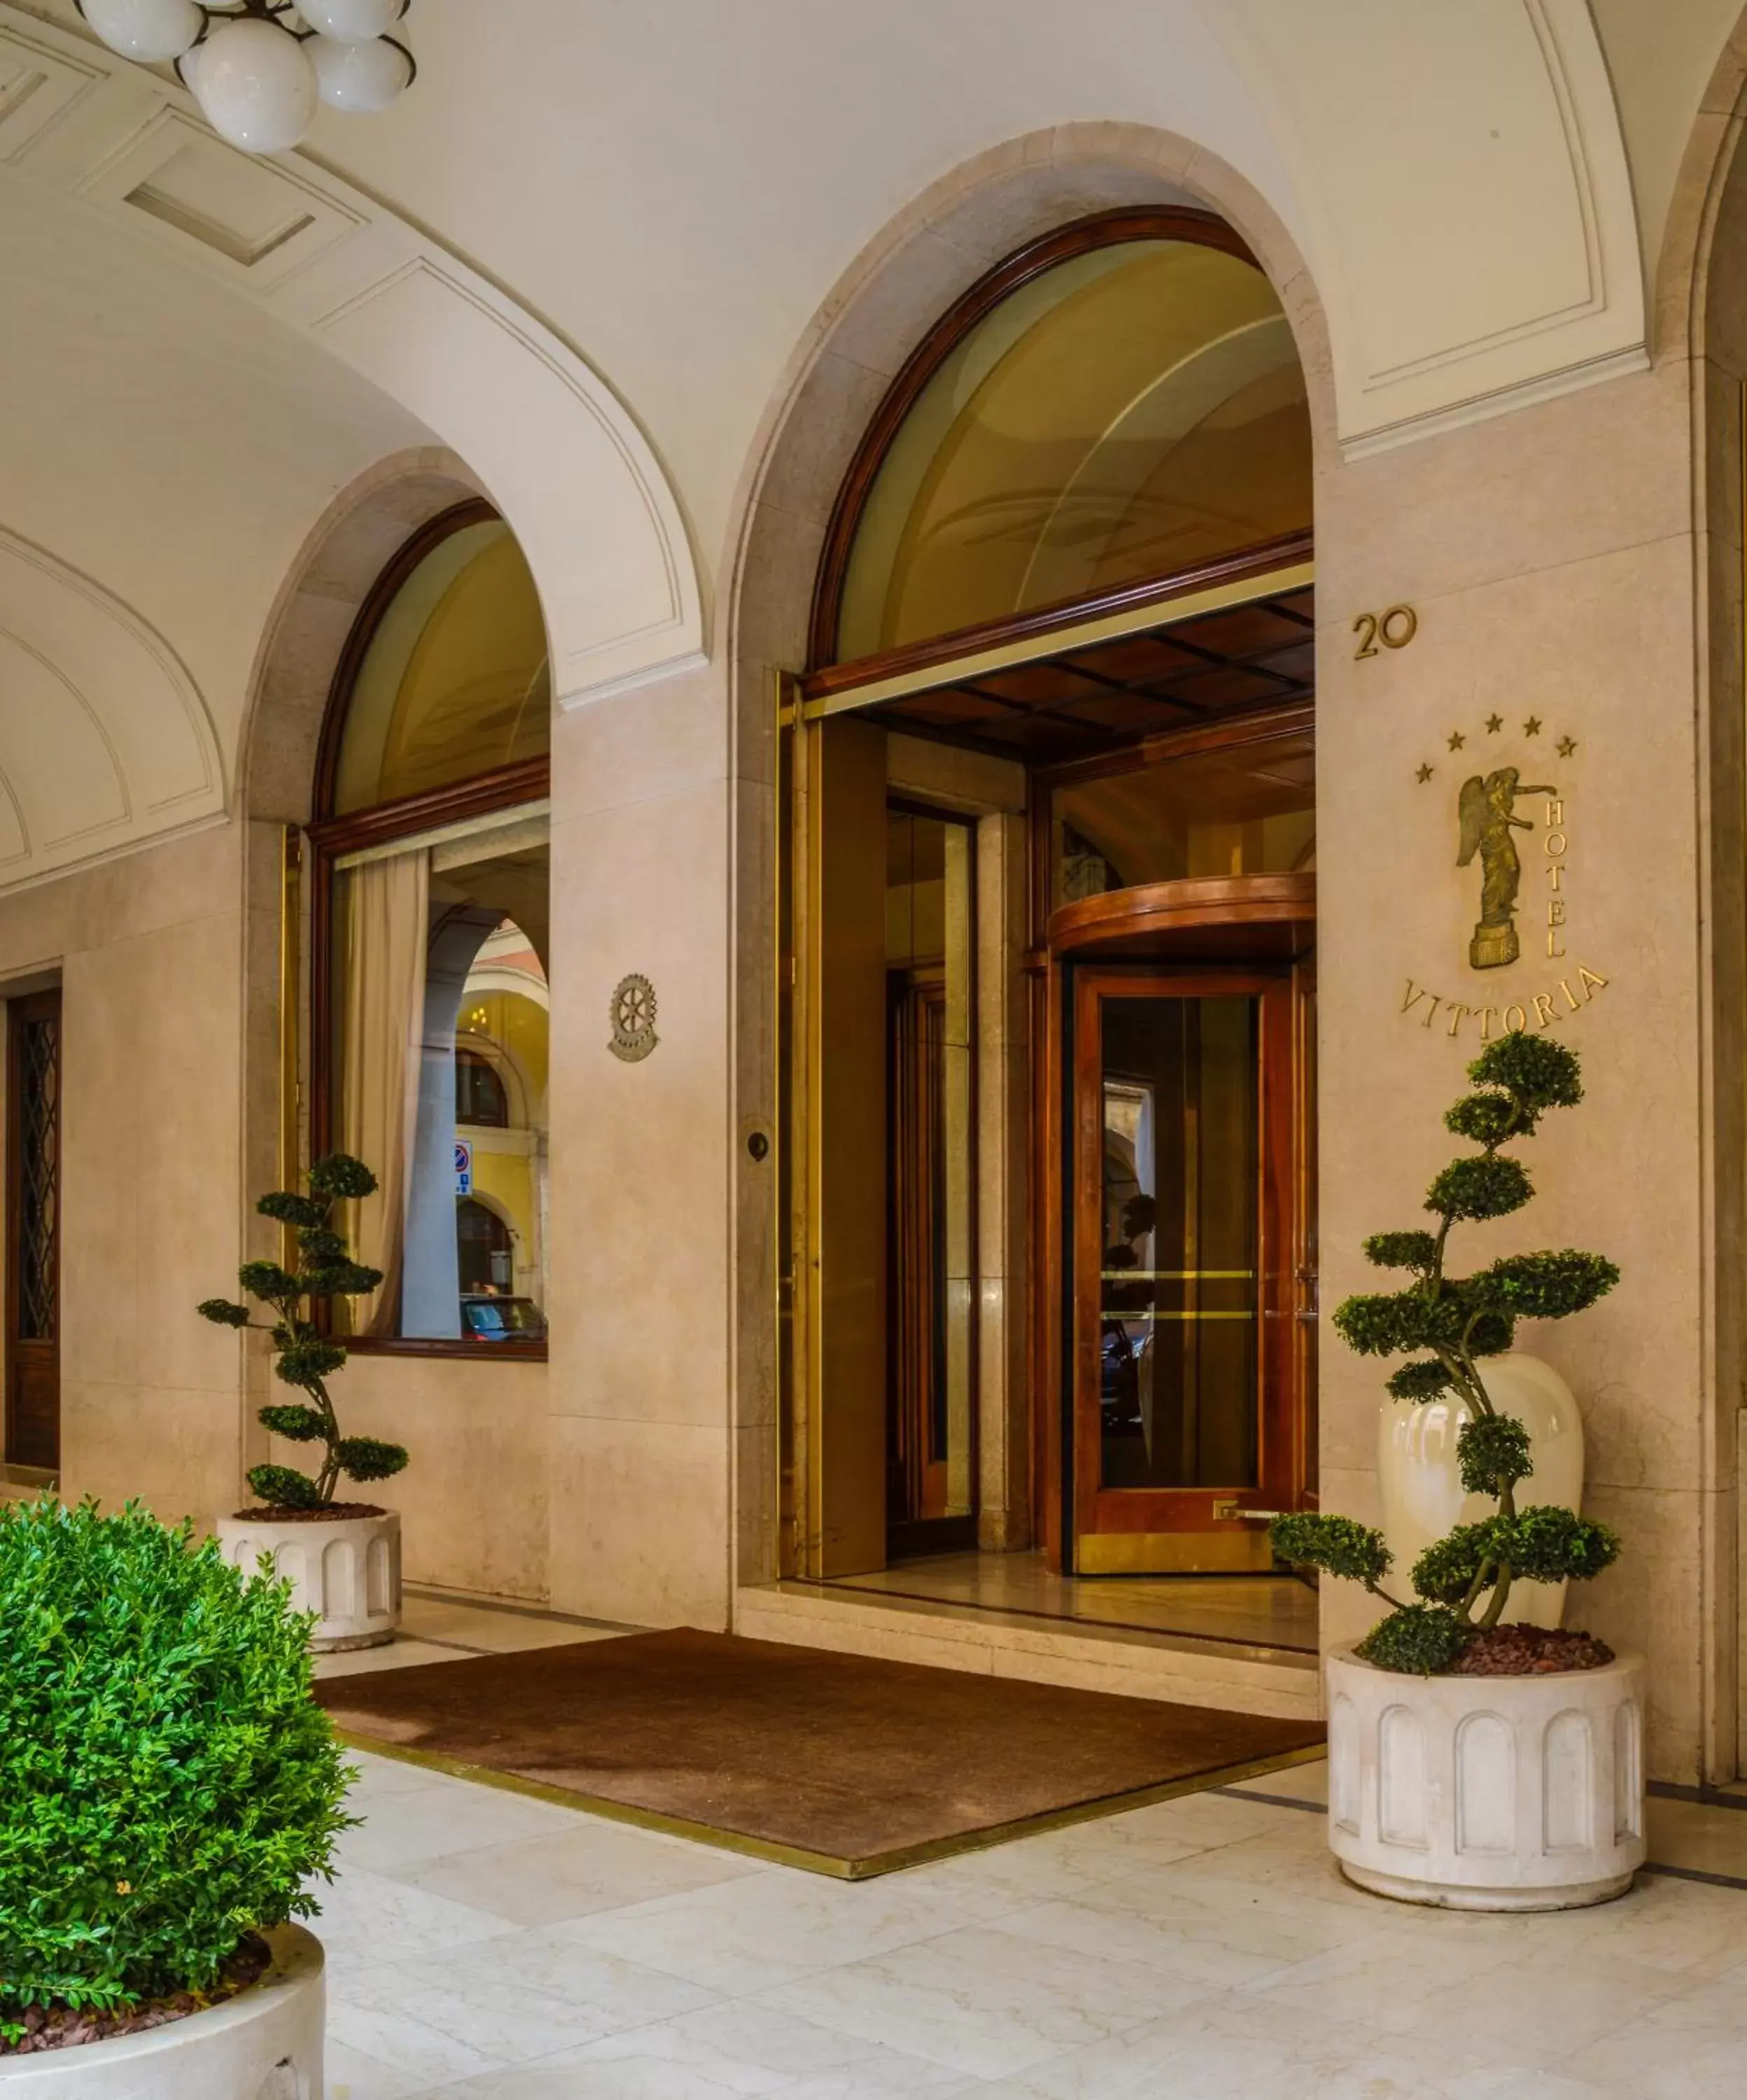 Facade/entrance in Hotel Vittoria